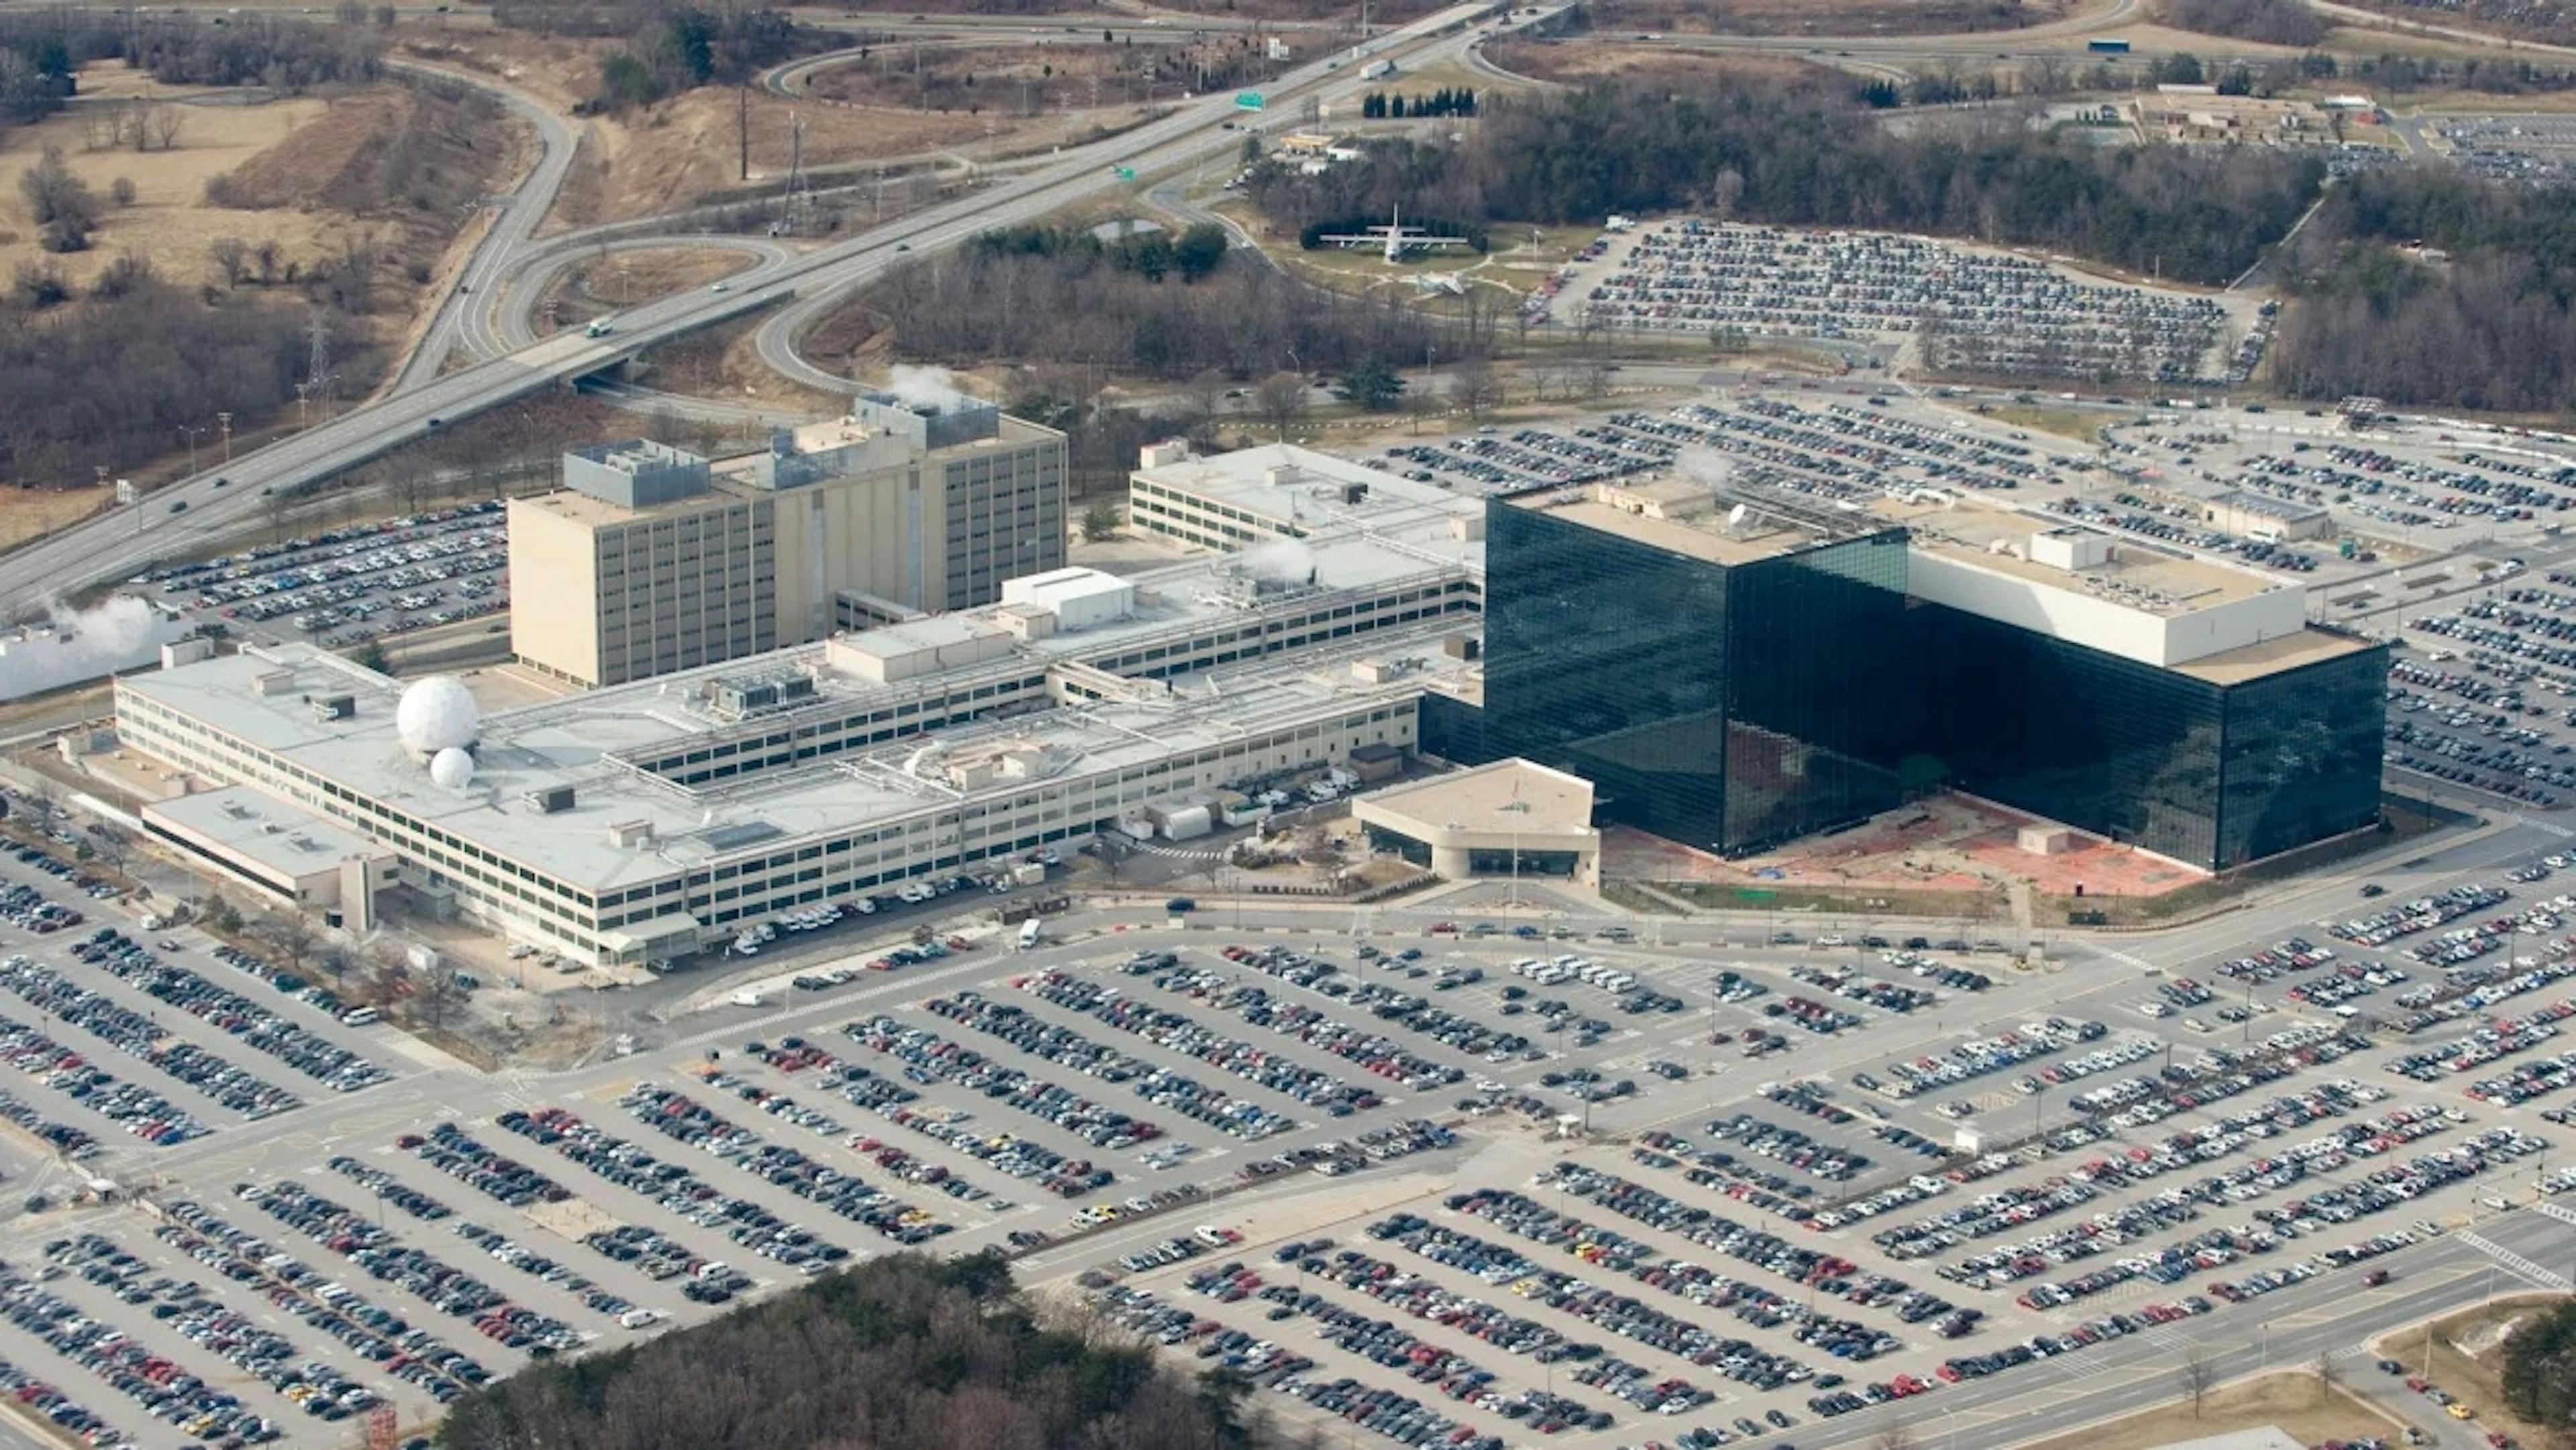 Trụ sở Cơ quan An ninh Quốc gia (NSA) tại Fort Meade, Maryland, nhìn từ trên không, ngày 29 tháng 1 năm 2010. Hình ảnh Saul Loeb/AFP/Getty